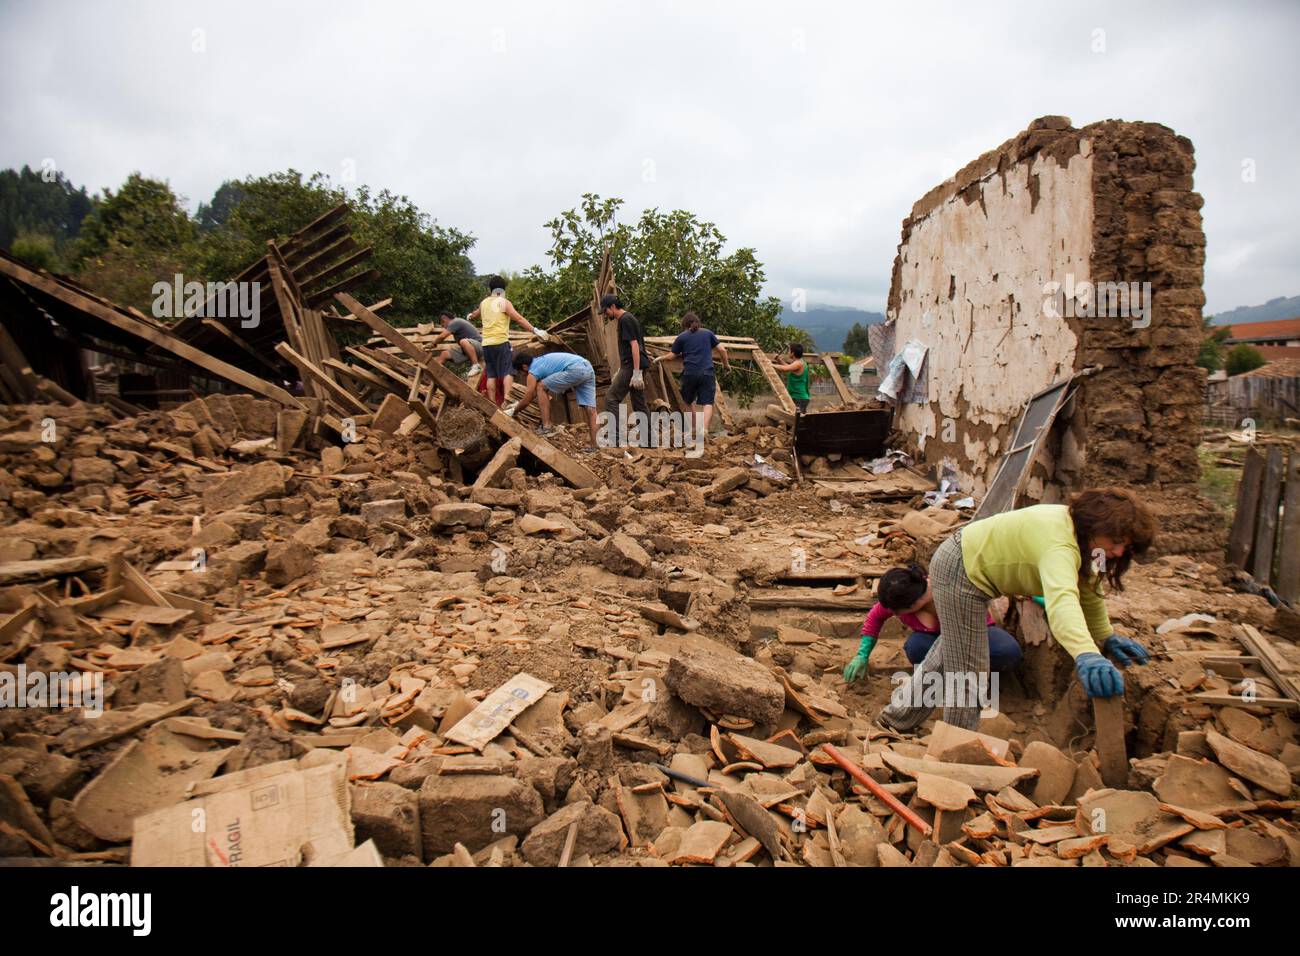 Die Einheimischen durchsuchen die Trümmer eines eingestürzten Gebäudes, das bei dem Erdbeben in Chile Anfang 2010 zerstört wurde. Stockfoto